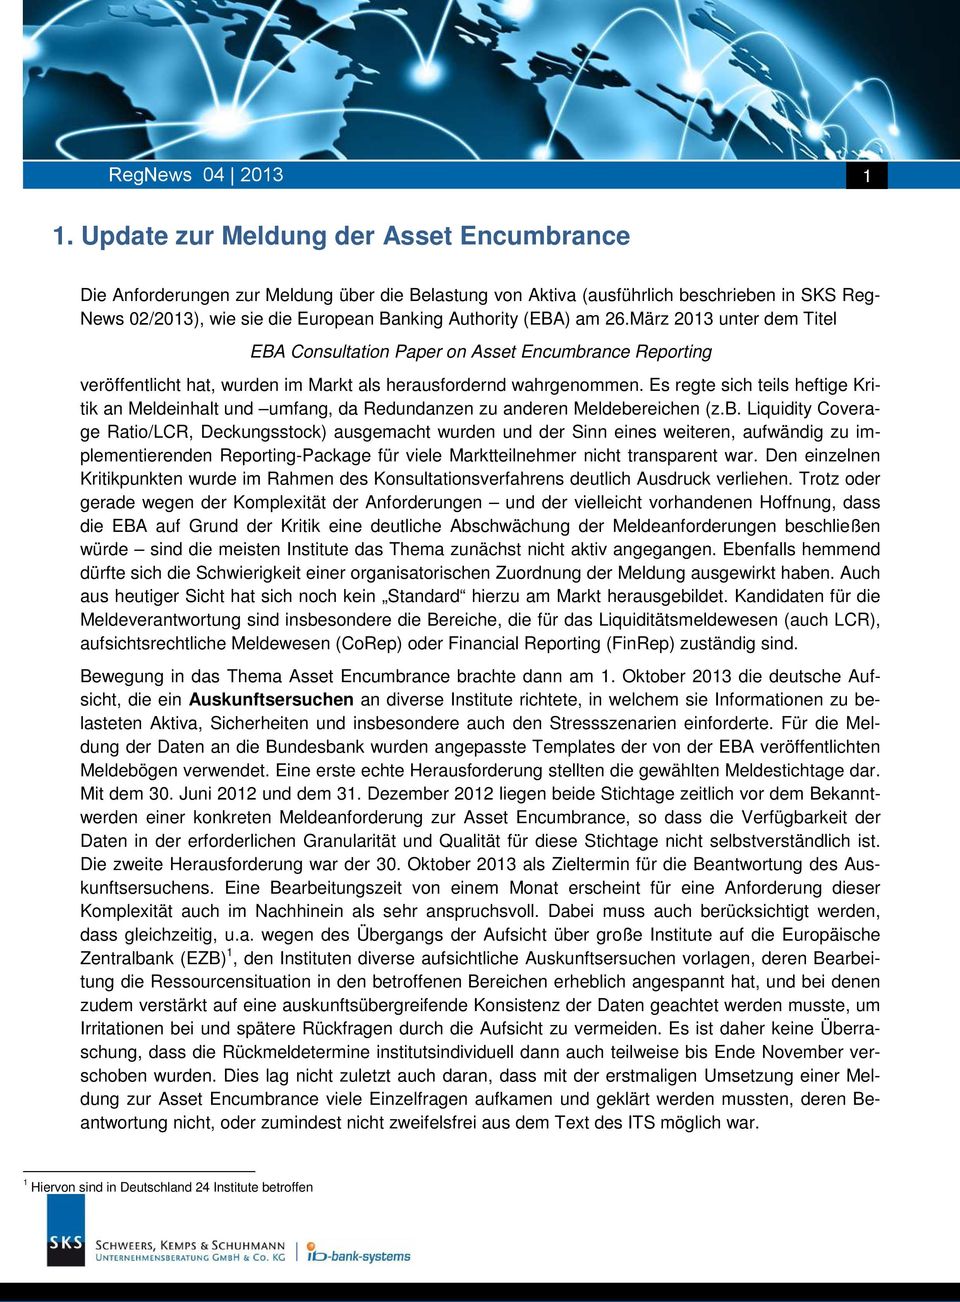 am 26.März 2013 unter dem Titel EBA Consultation Paper on Asset Encumbrance Reporting veröffentlicht hat, wurden im Markt als herausfordernd wahrgenommen.